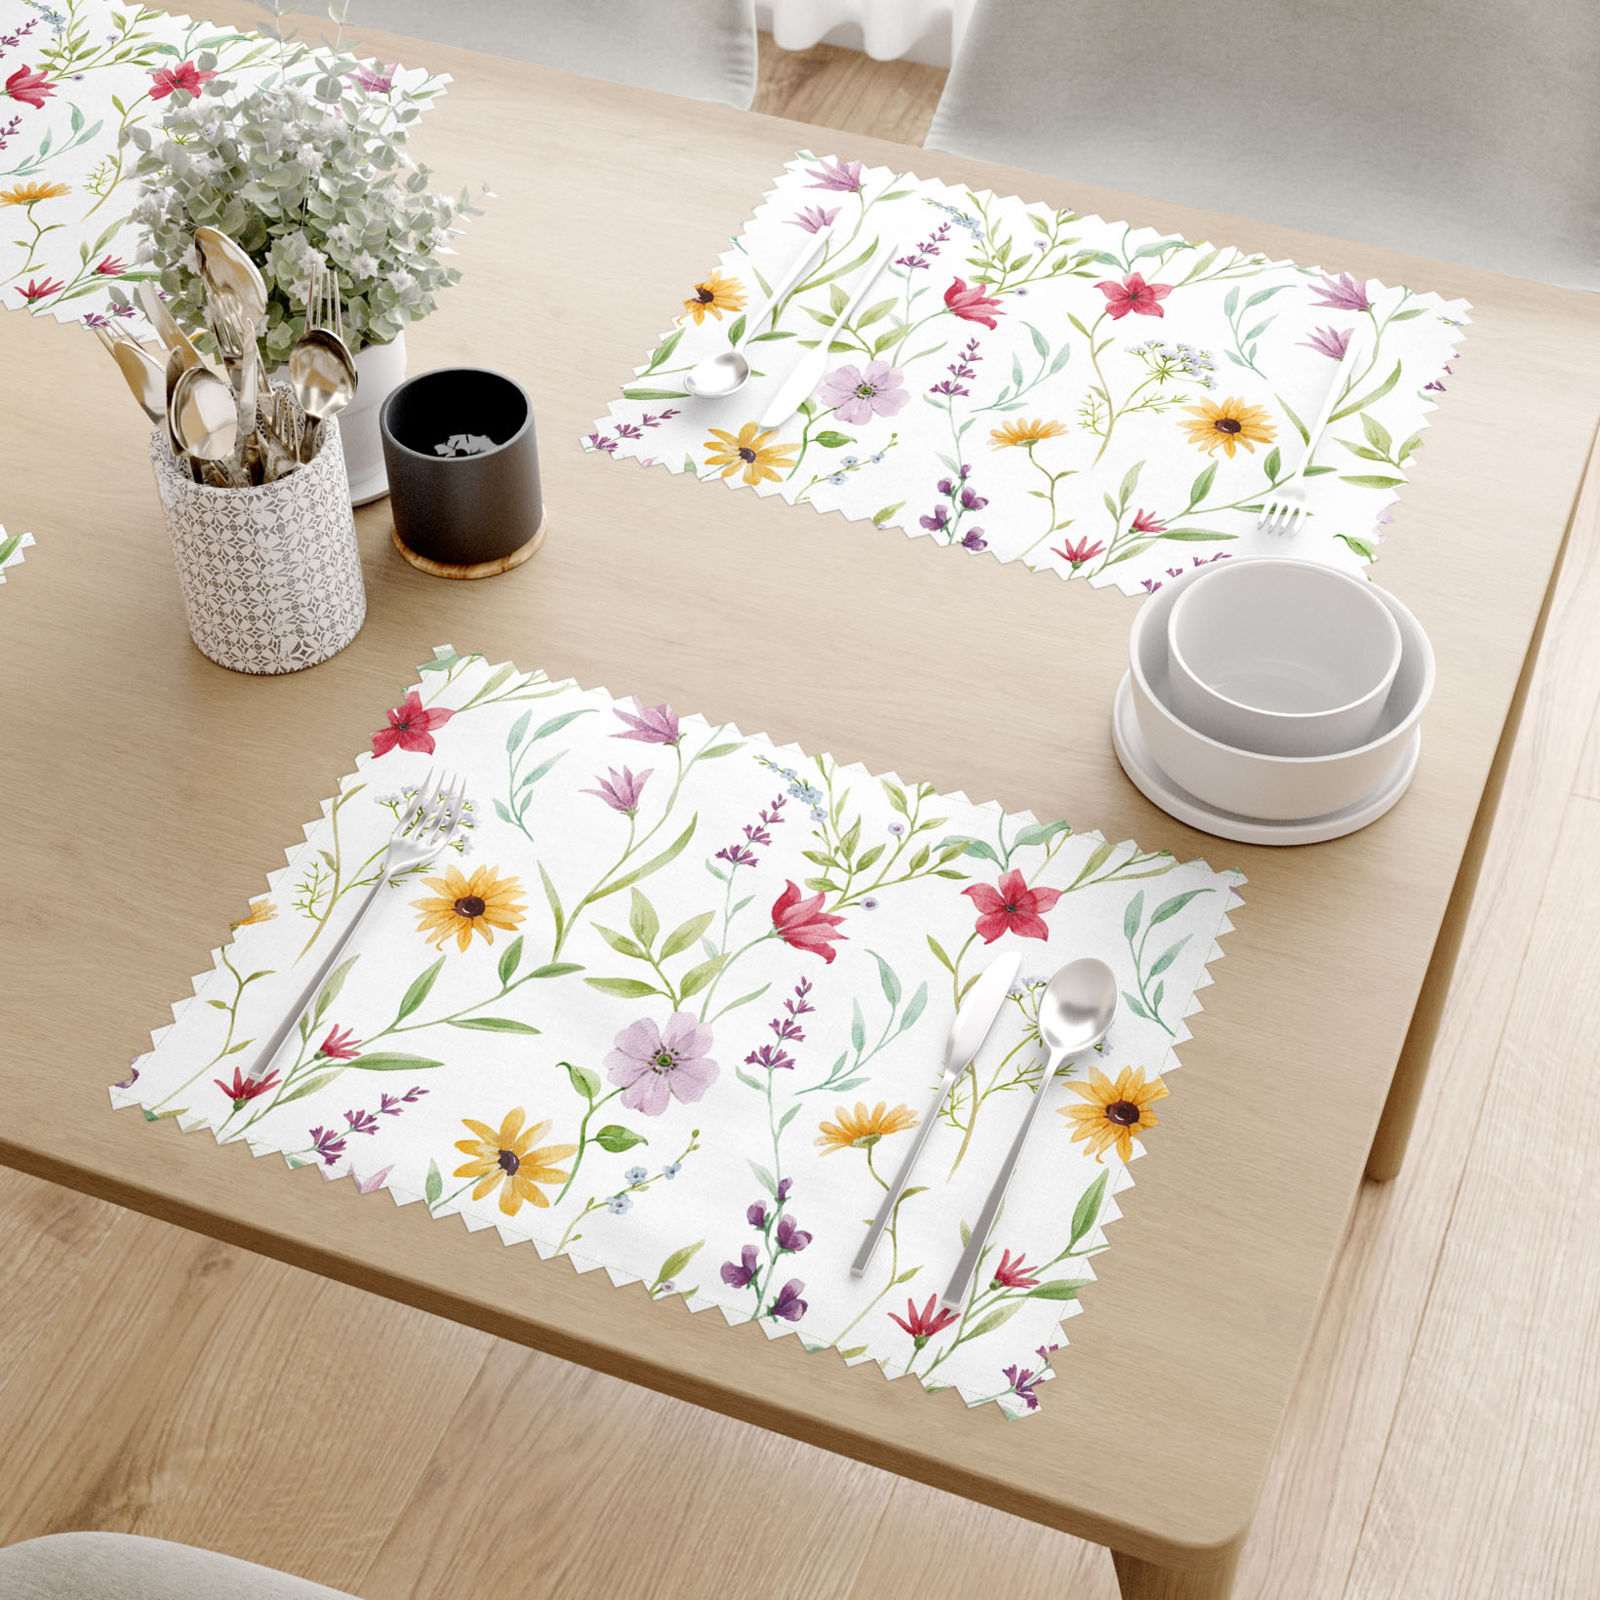 Podkładka na stół plamoodporna - kolorowe kwiaty wiosenne - 2szt.